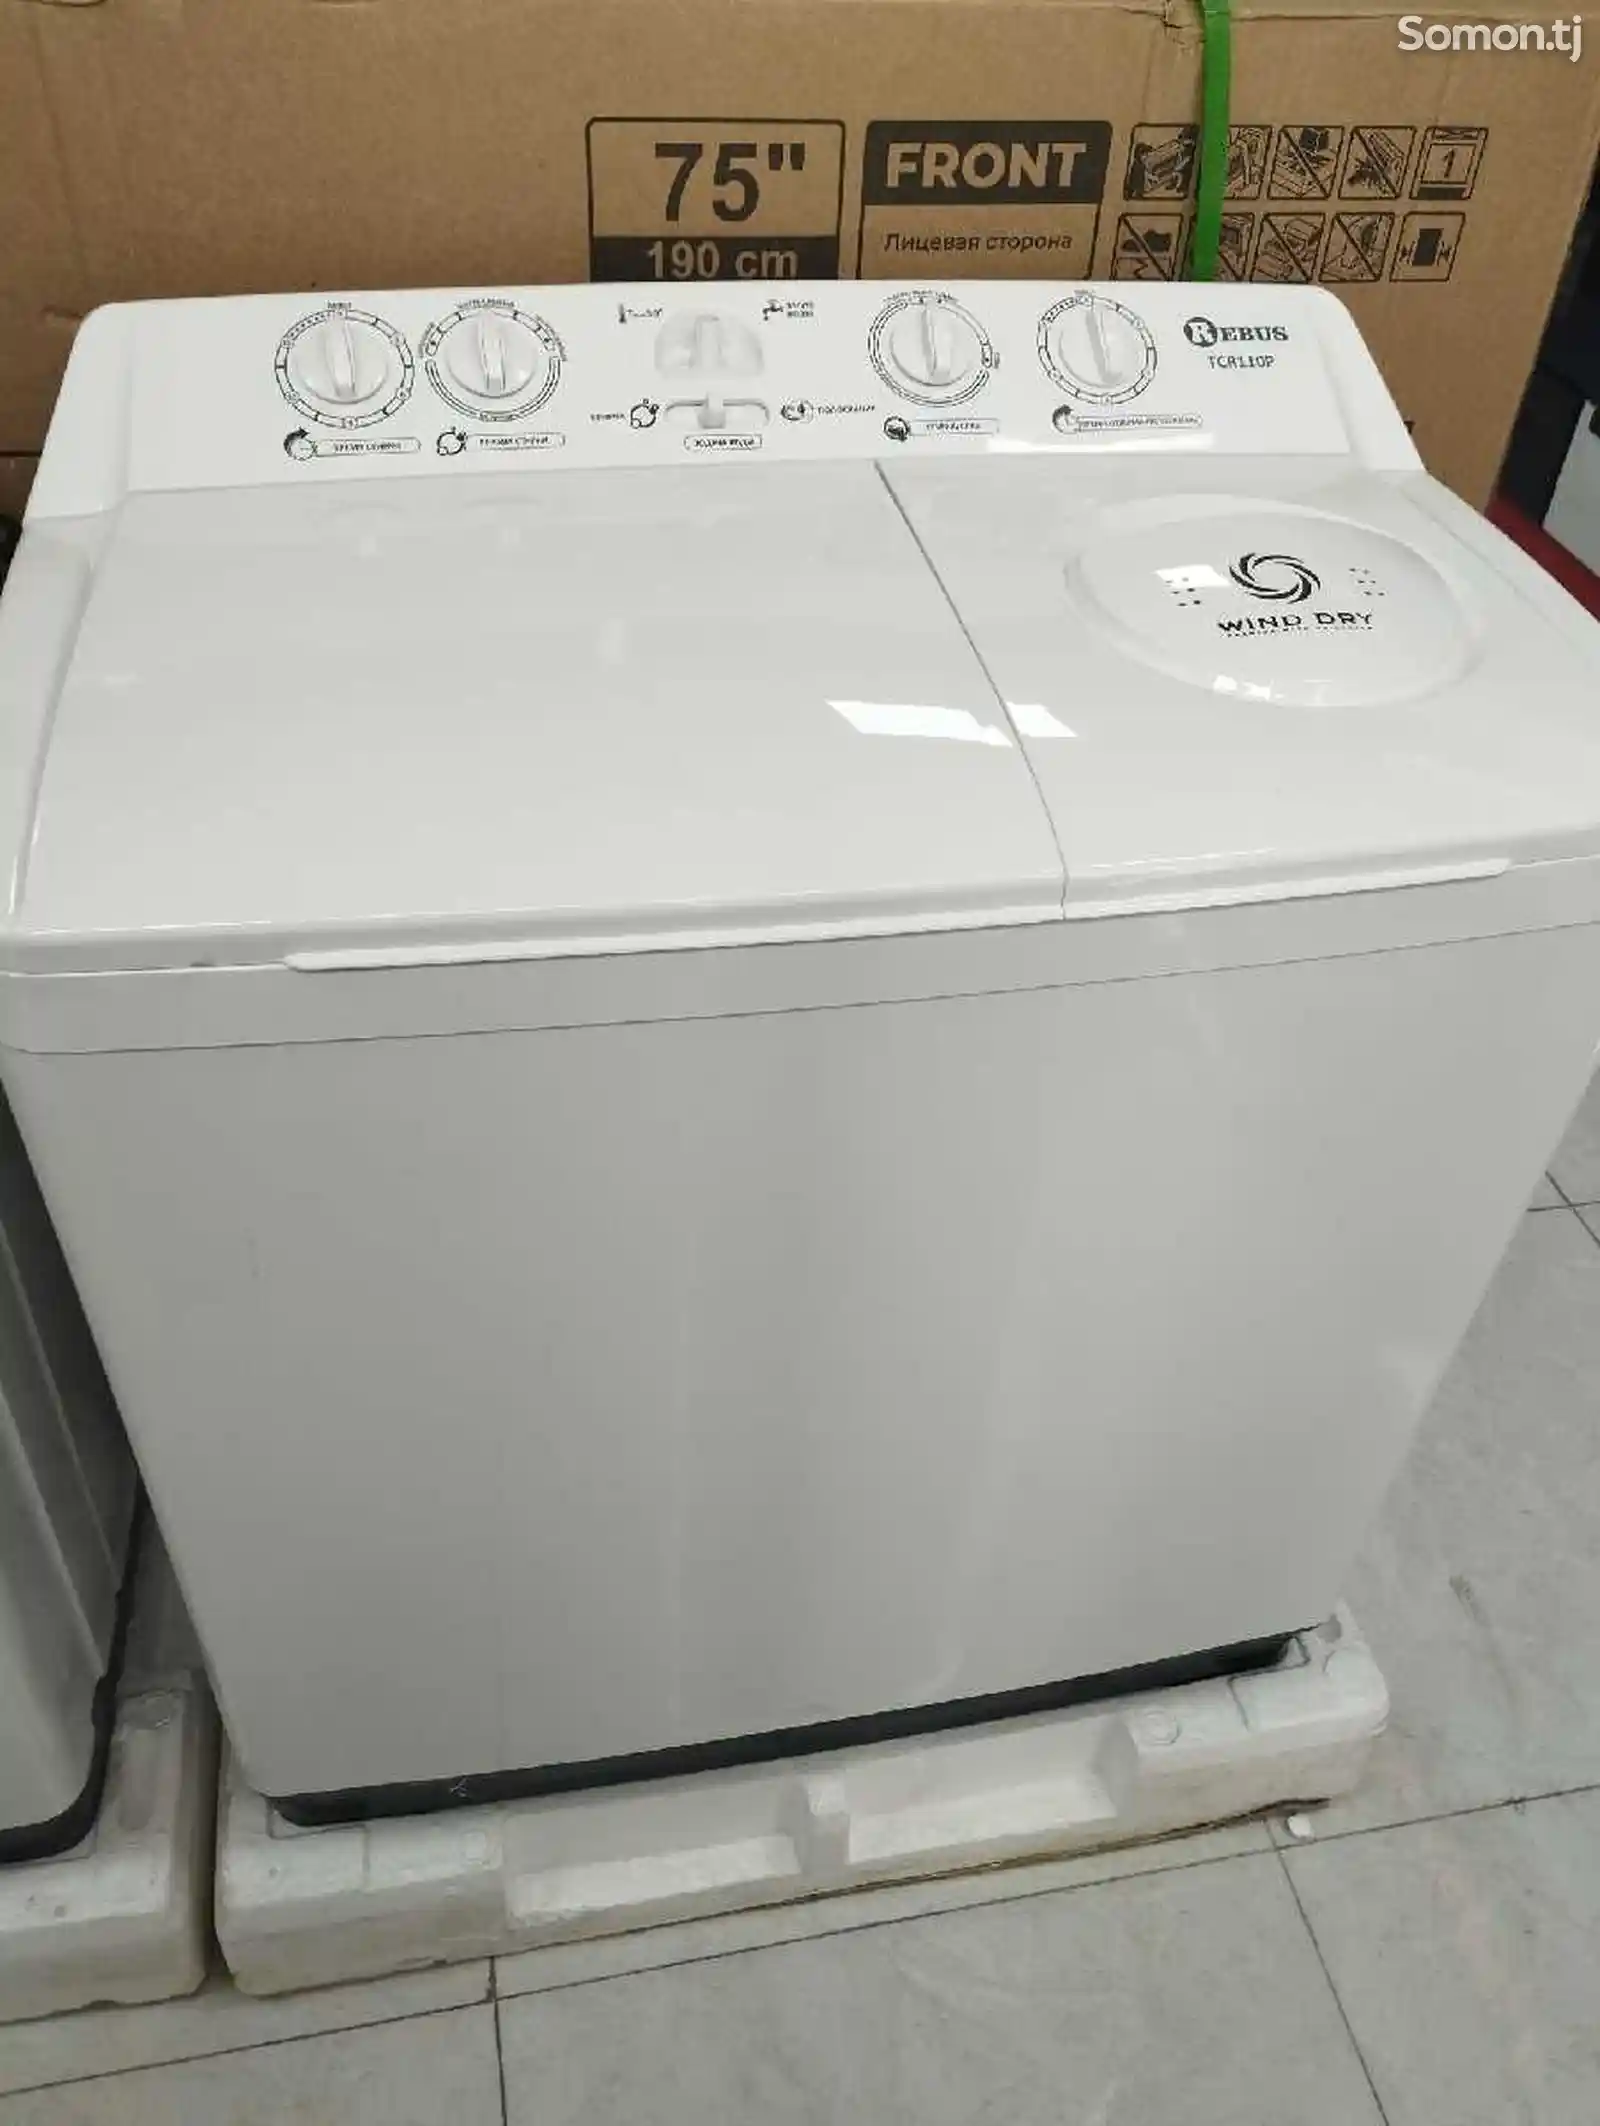 Полуавтоматическая стиральная машина с вертикальной загрузкой белья